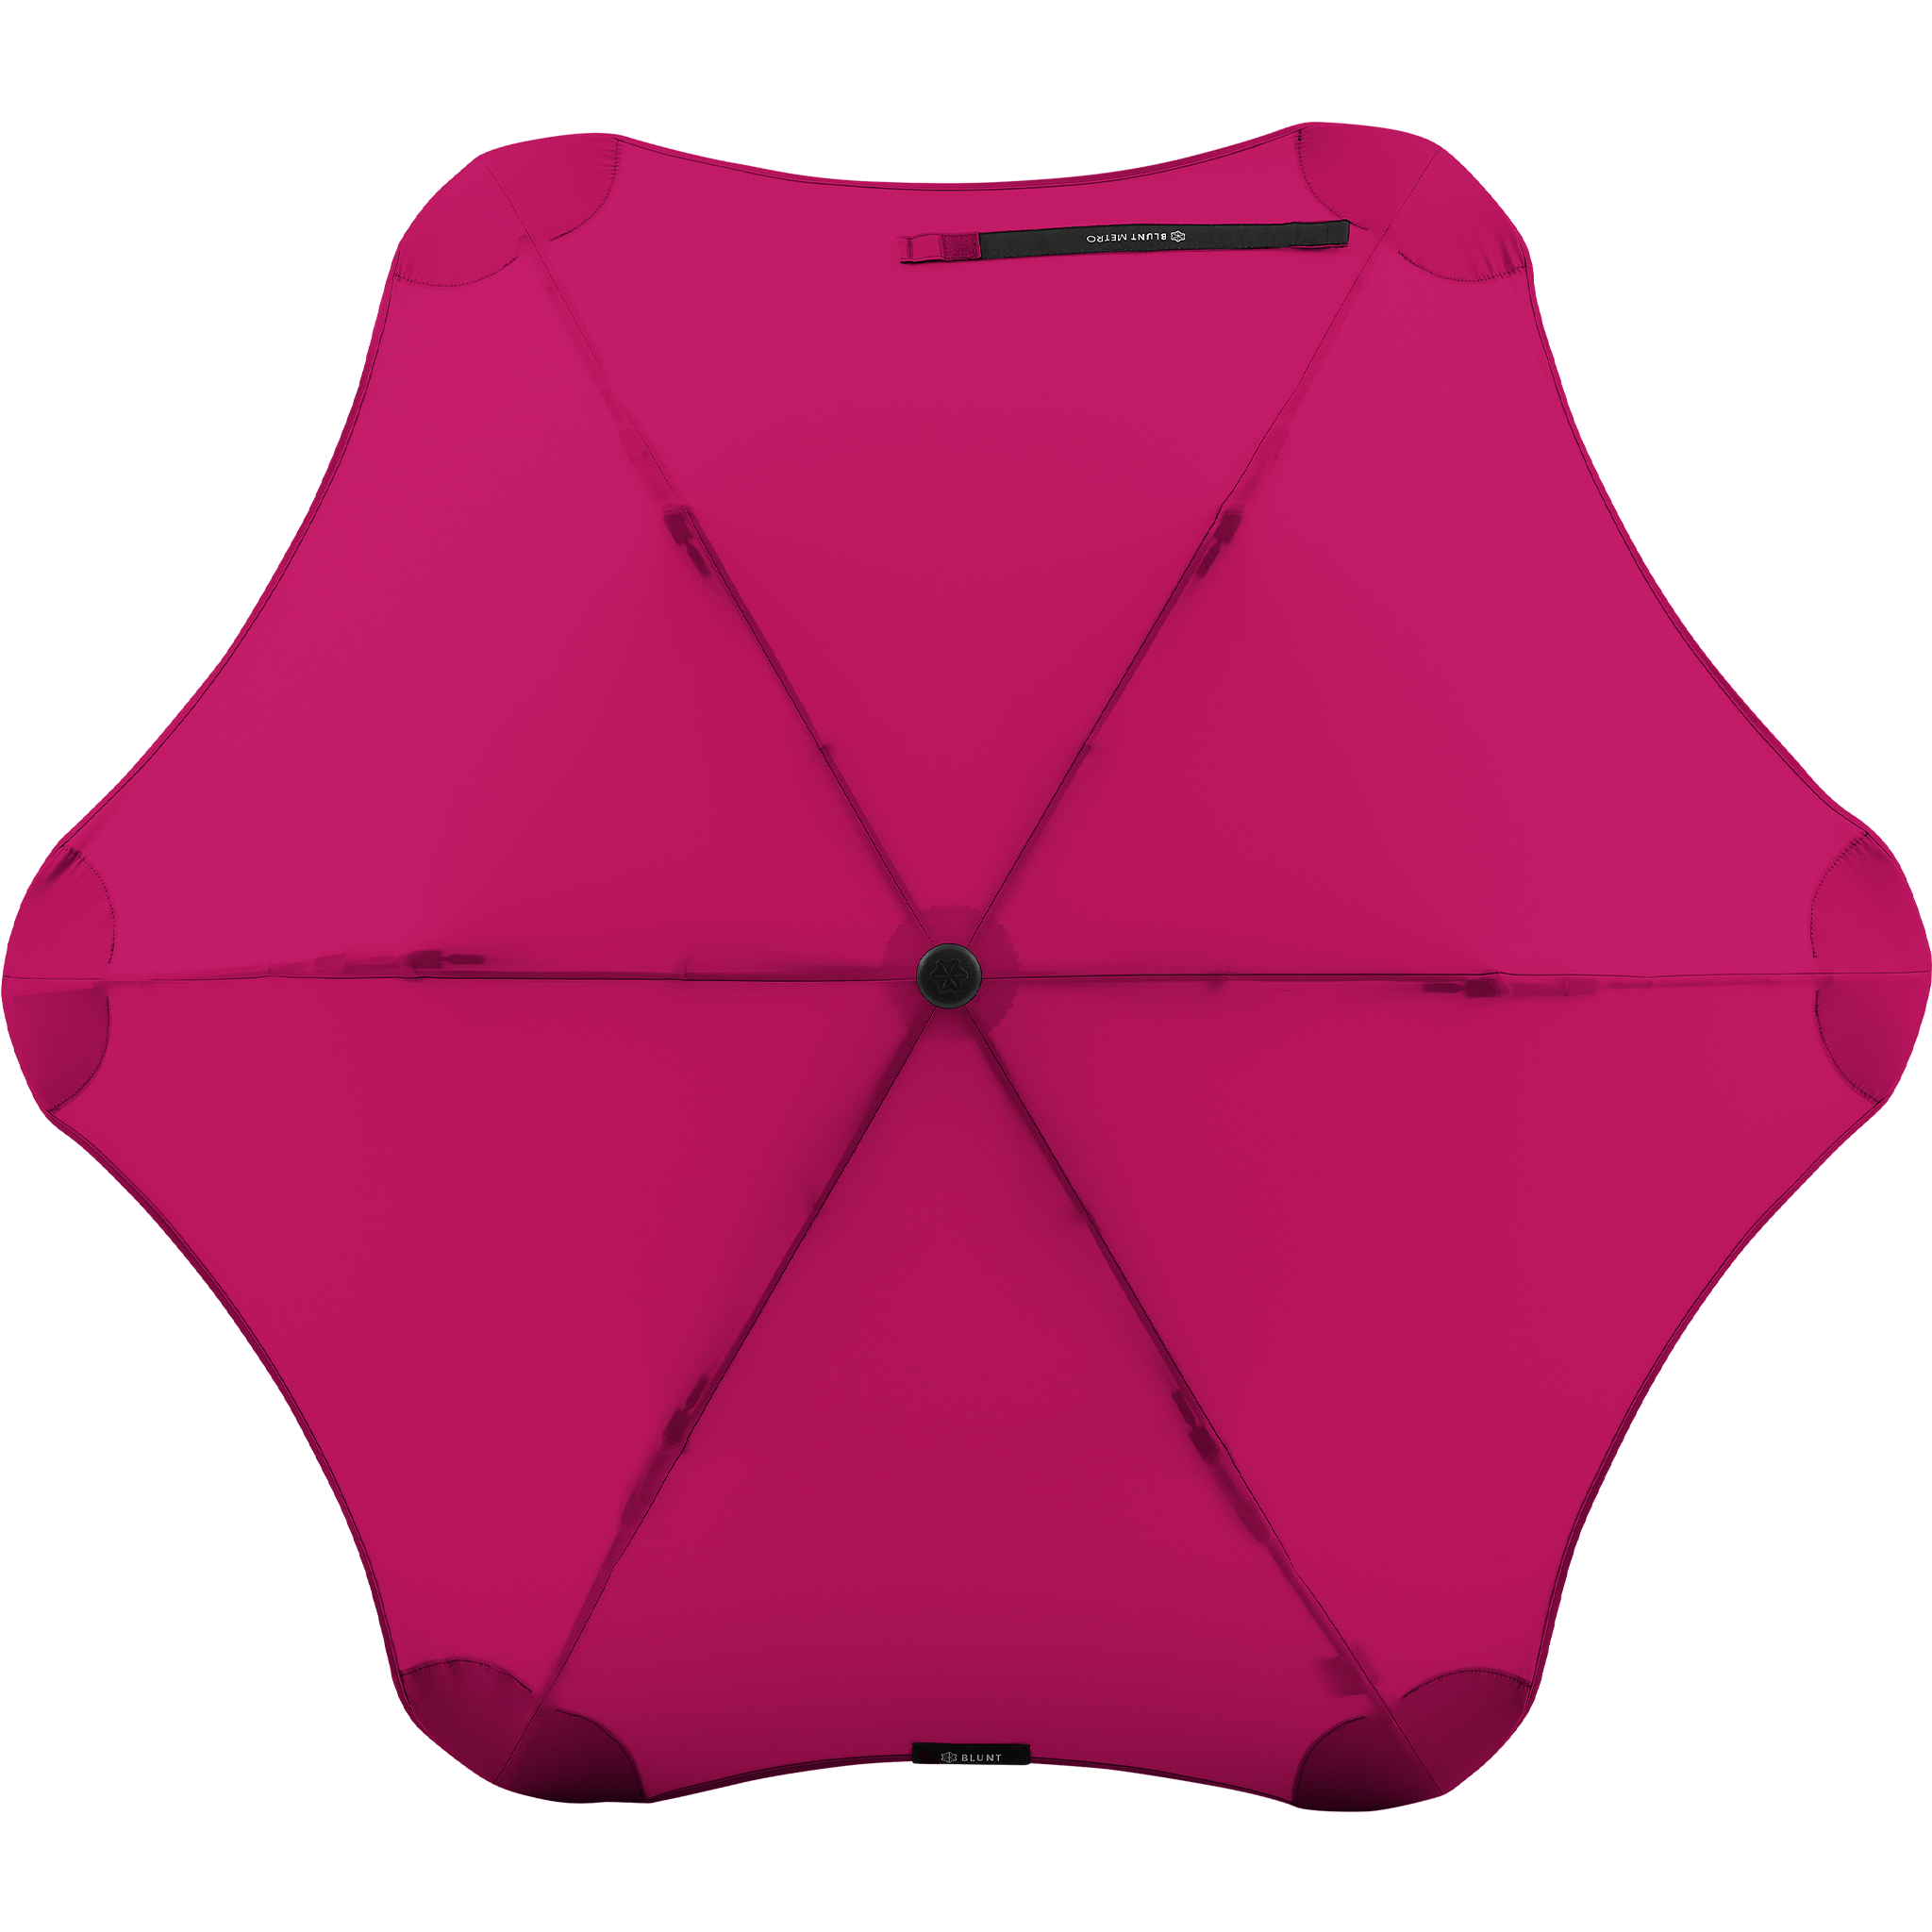 2020 Metro Pink Blunt Umbrella Top View